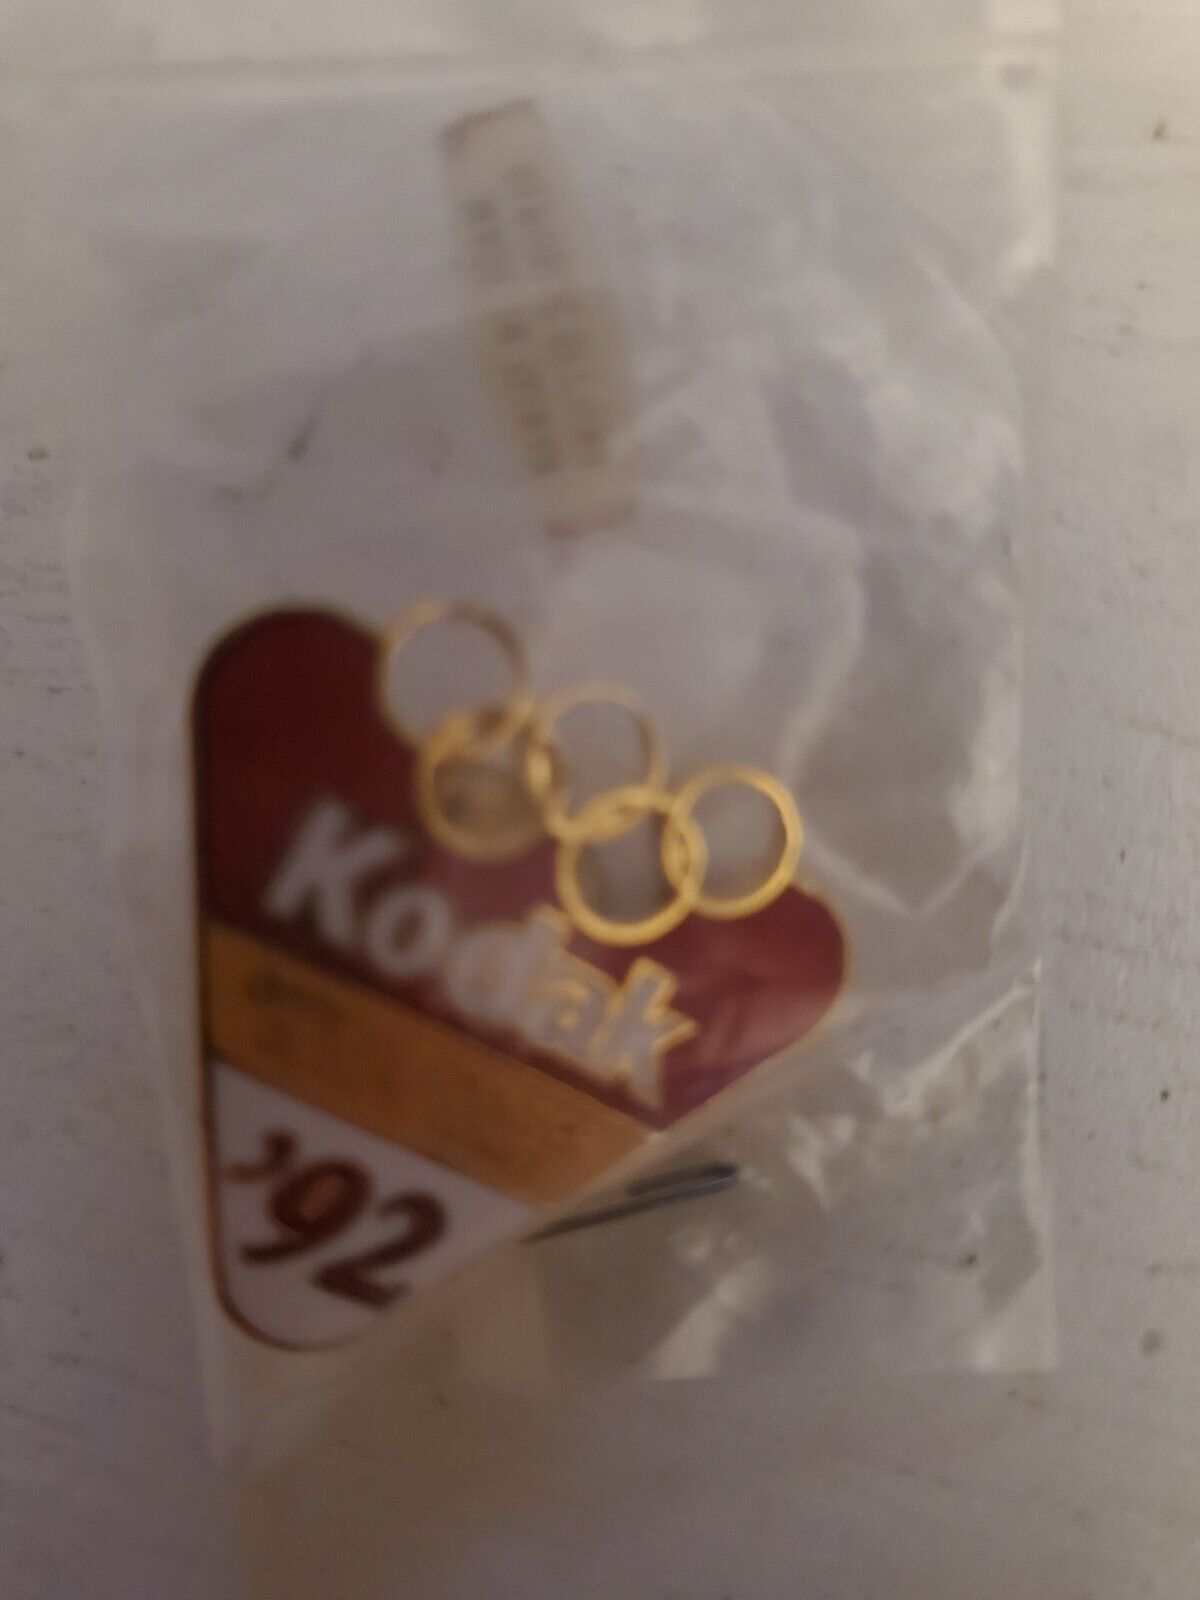 Kodak Official Sponsor 92 Olympics Pin